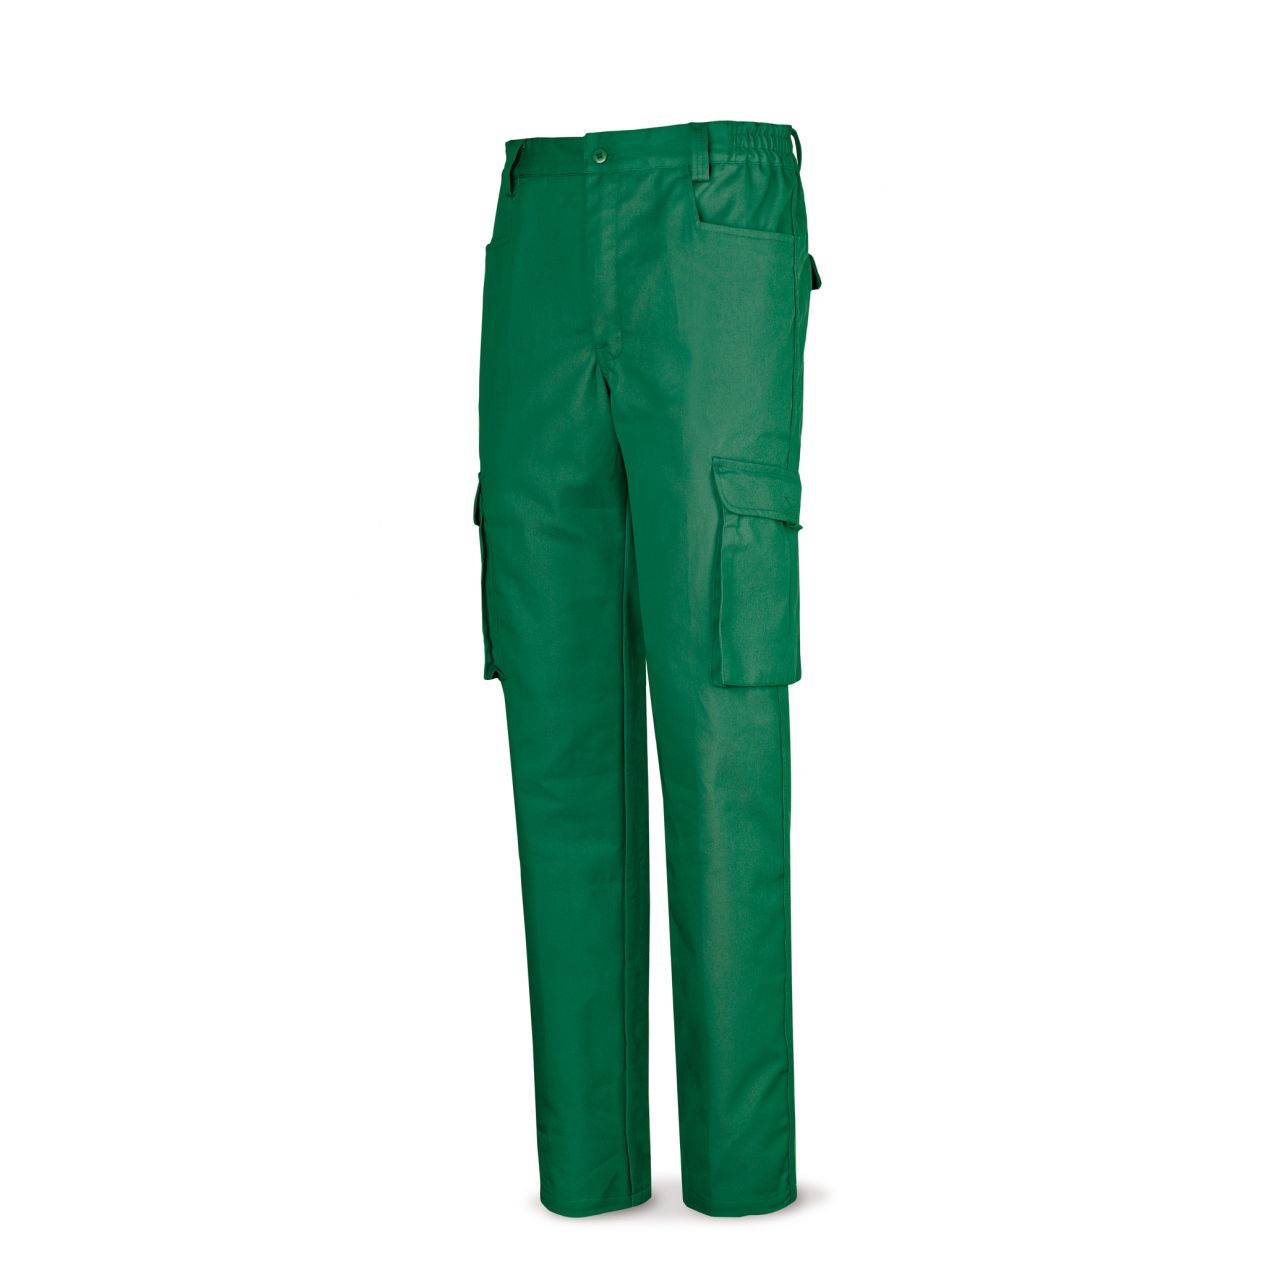 488PTTOPV Pantalón verde poliester/algodón de 245 g. Multibolsillo